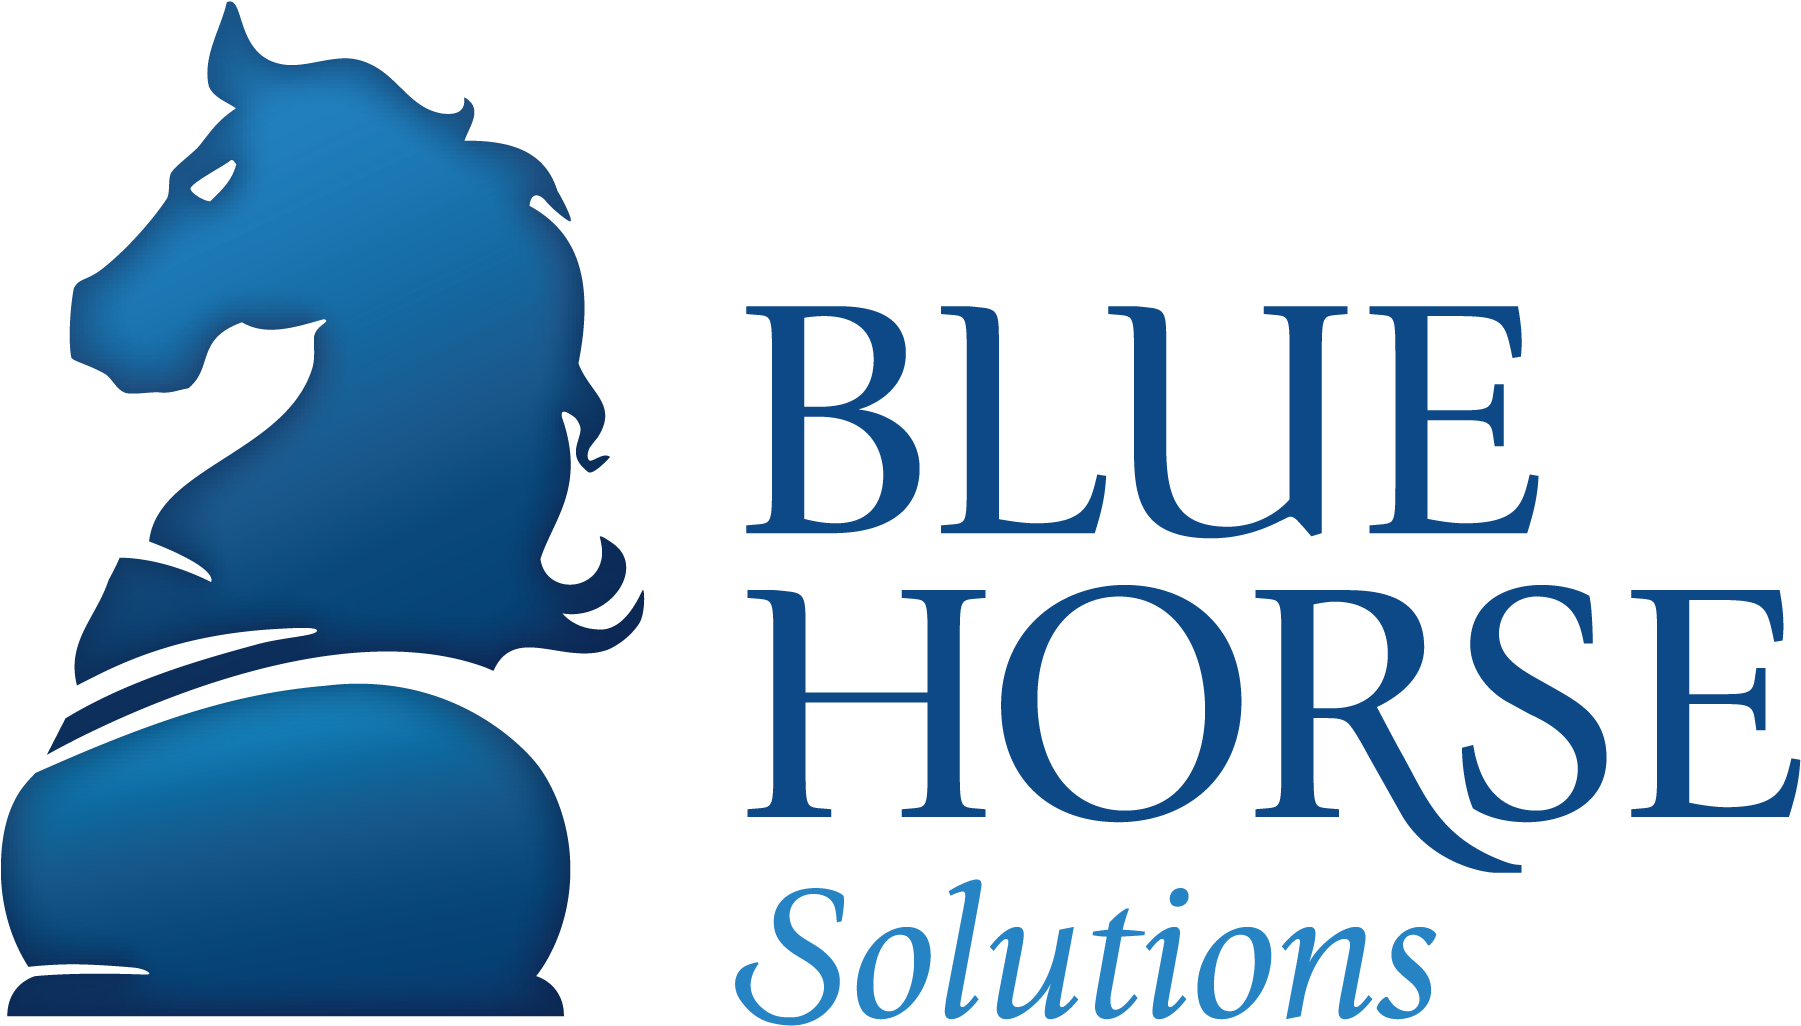 Blue Horse Solutions - Blue Horse Solutions (1800x1043)